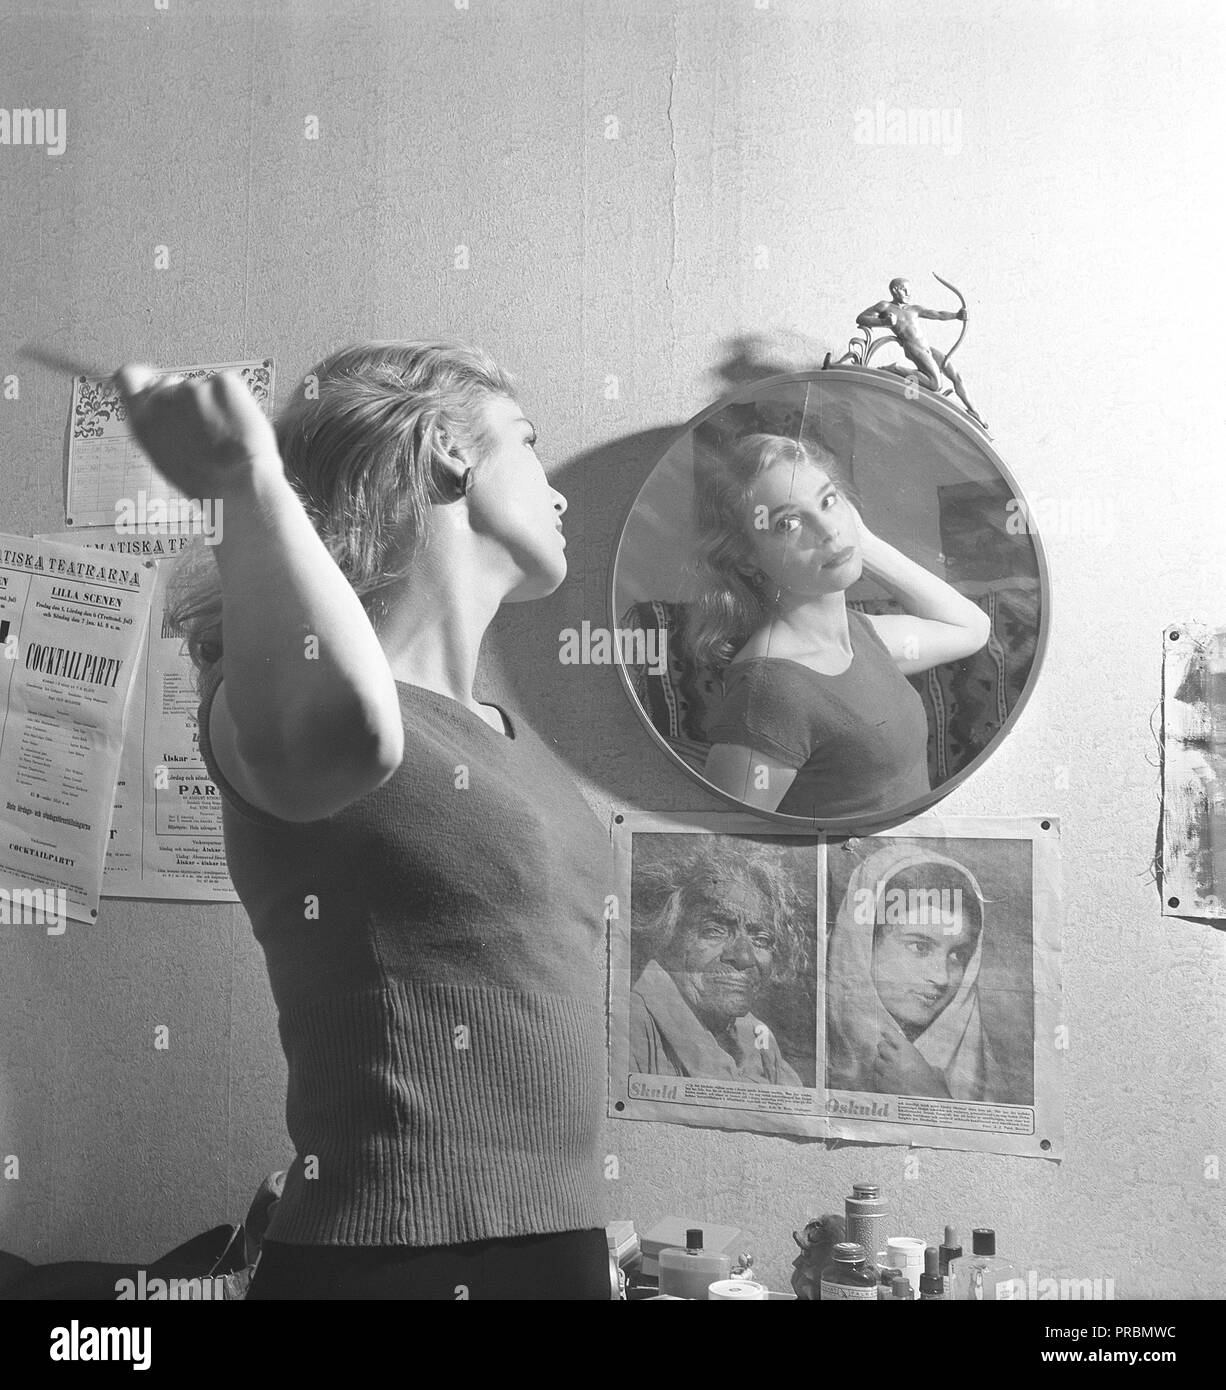 Frau in den 1950er. Eine junge Frau steht vor einem Spiegel und kämmt sich die Haare. Hier ist die schwedische Schauspielerin Ingrid Thulin abgebildet. 1926-2004. Beachten Sie, wie die Fotografin sie im Spiegel positioniert hat, sodass der Riss im Art déco-Spiegelglas durch ihr Gesicht geht. Schweden 1951. Kristoffersson Ref. BB39-12 Stockfoto